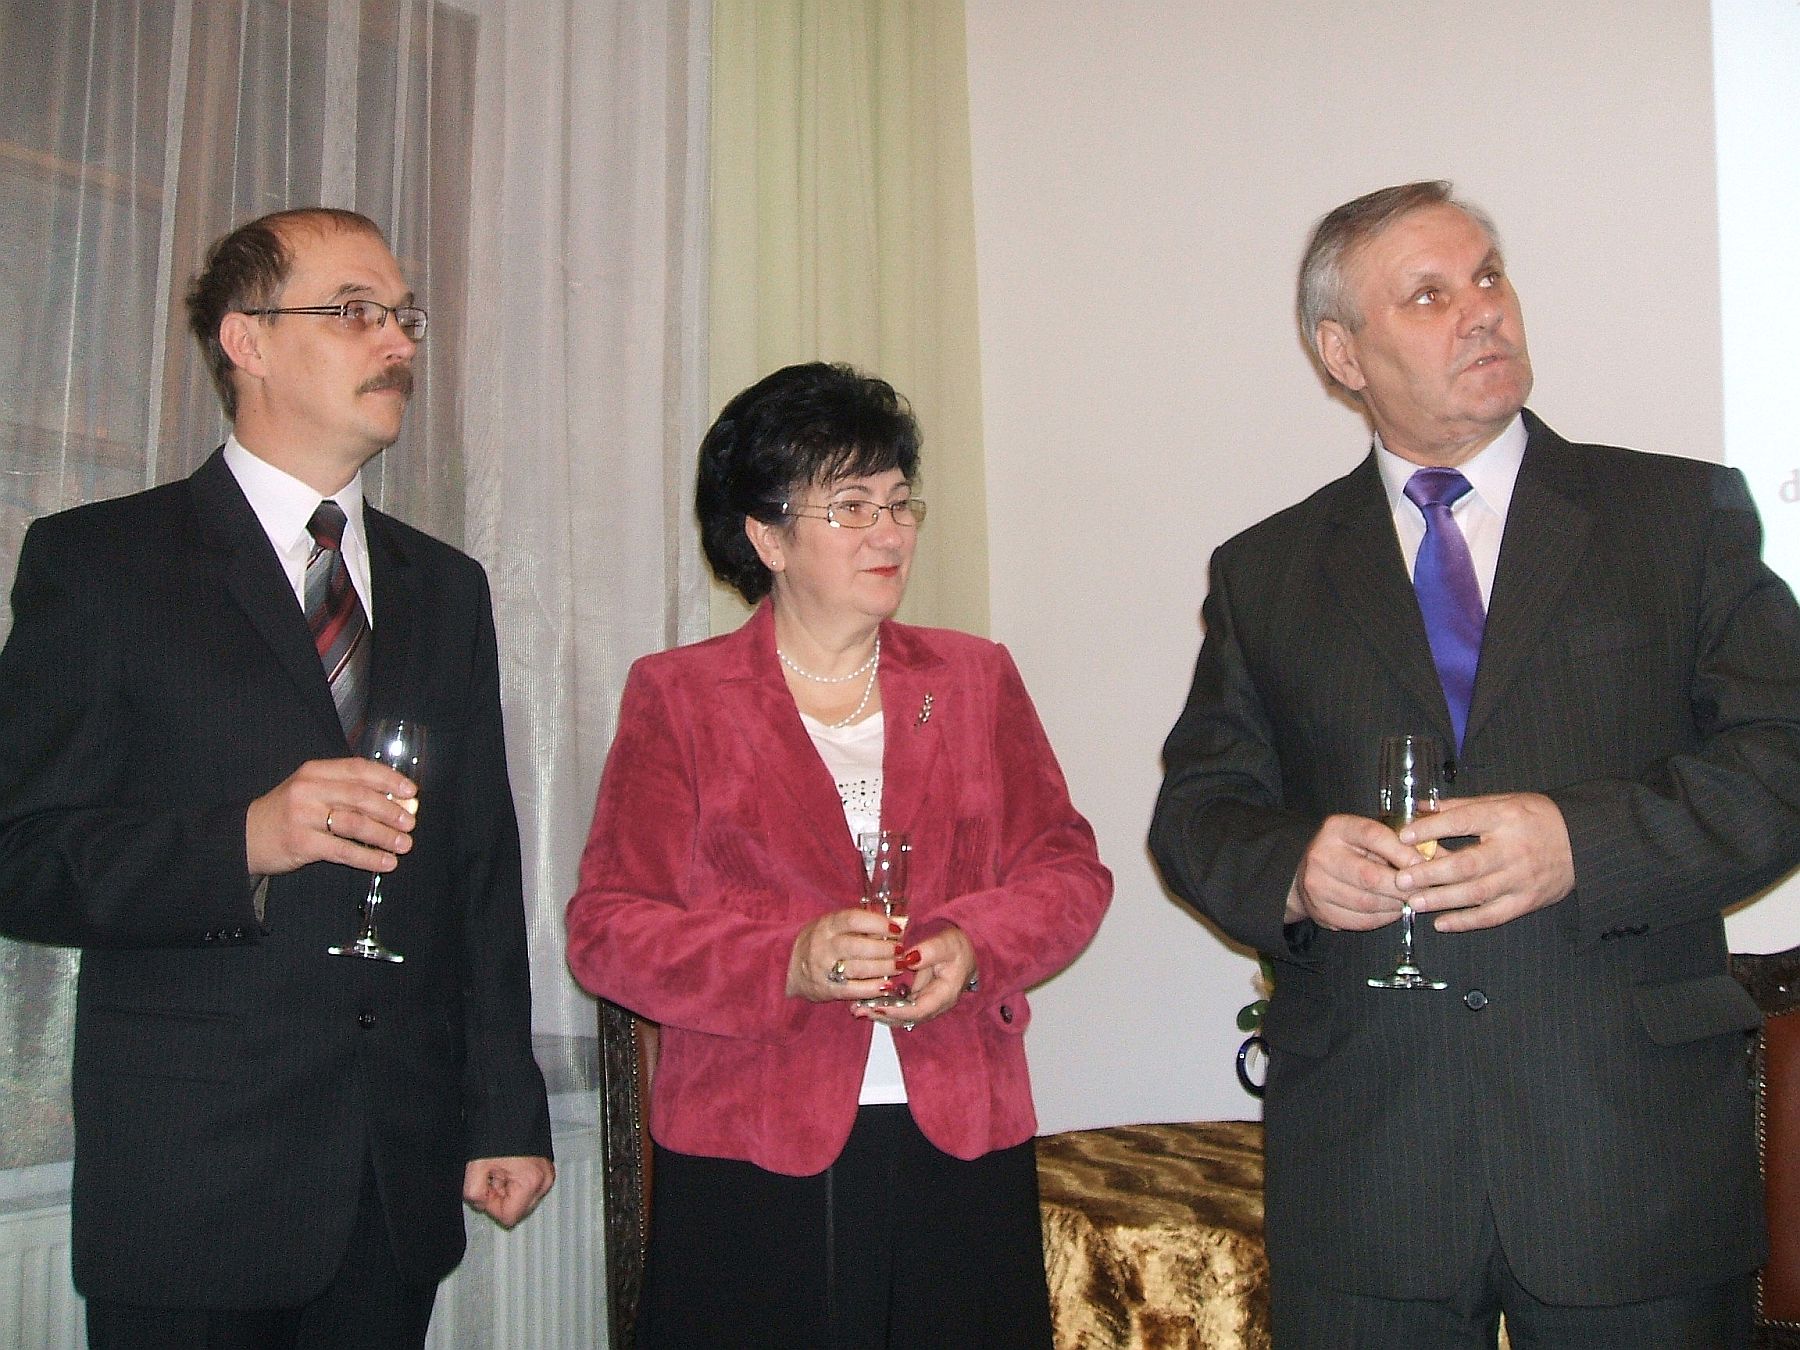 Przedstawiciele  Zarzdu sierpeckiego Oddziau TNP dr Henryka Piekarska i Grzegorz Wsiewski wraz ze starost sierpeckim Janem Laskowskim podczas noworocznego toastu.